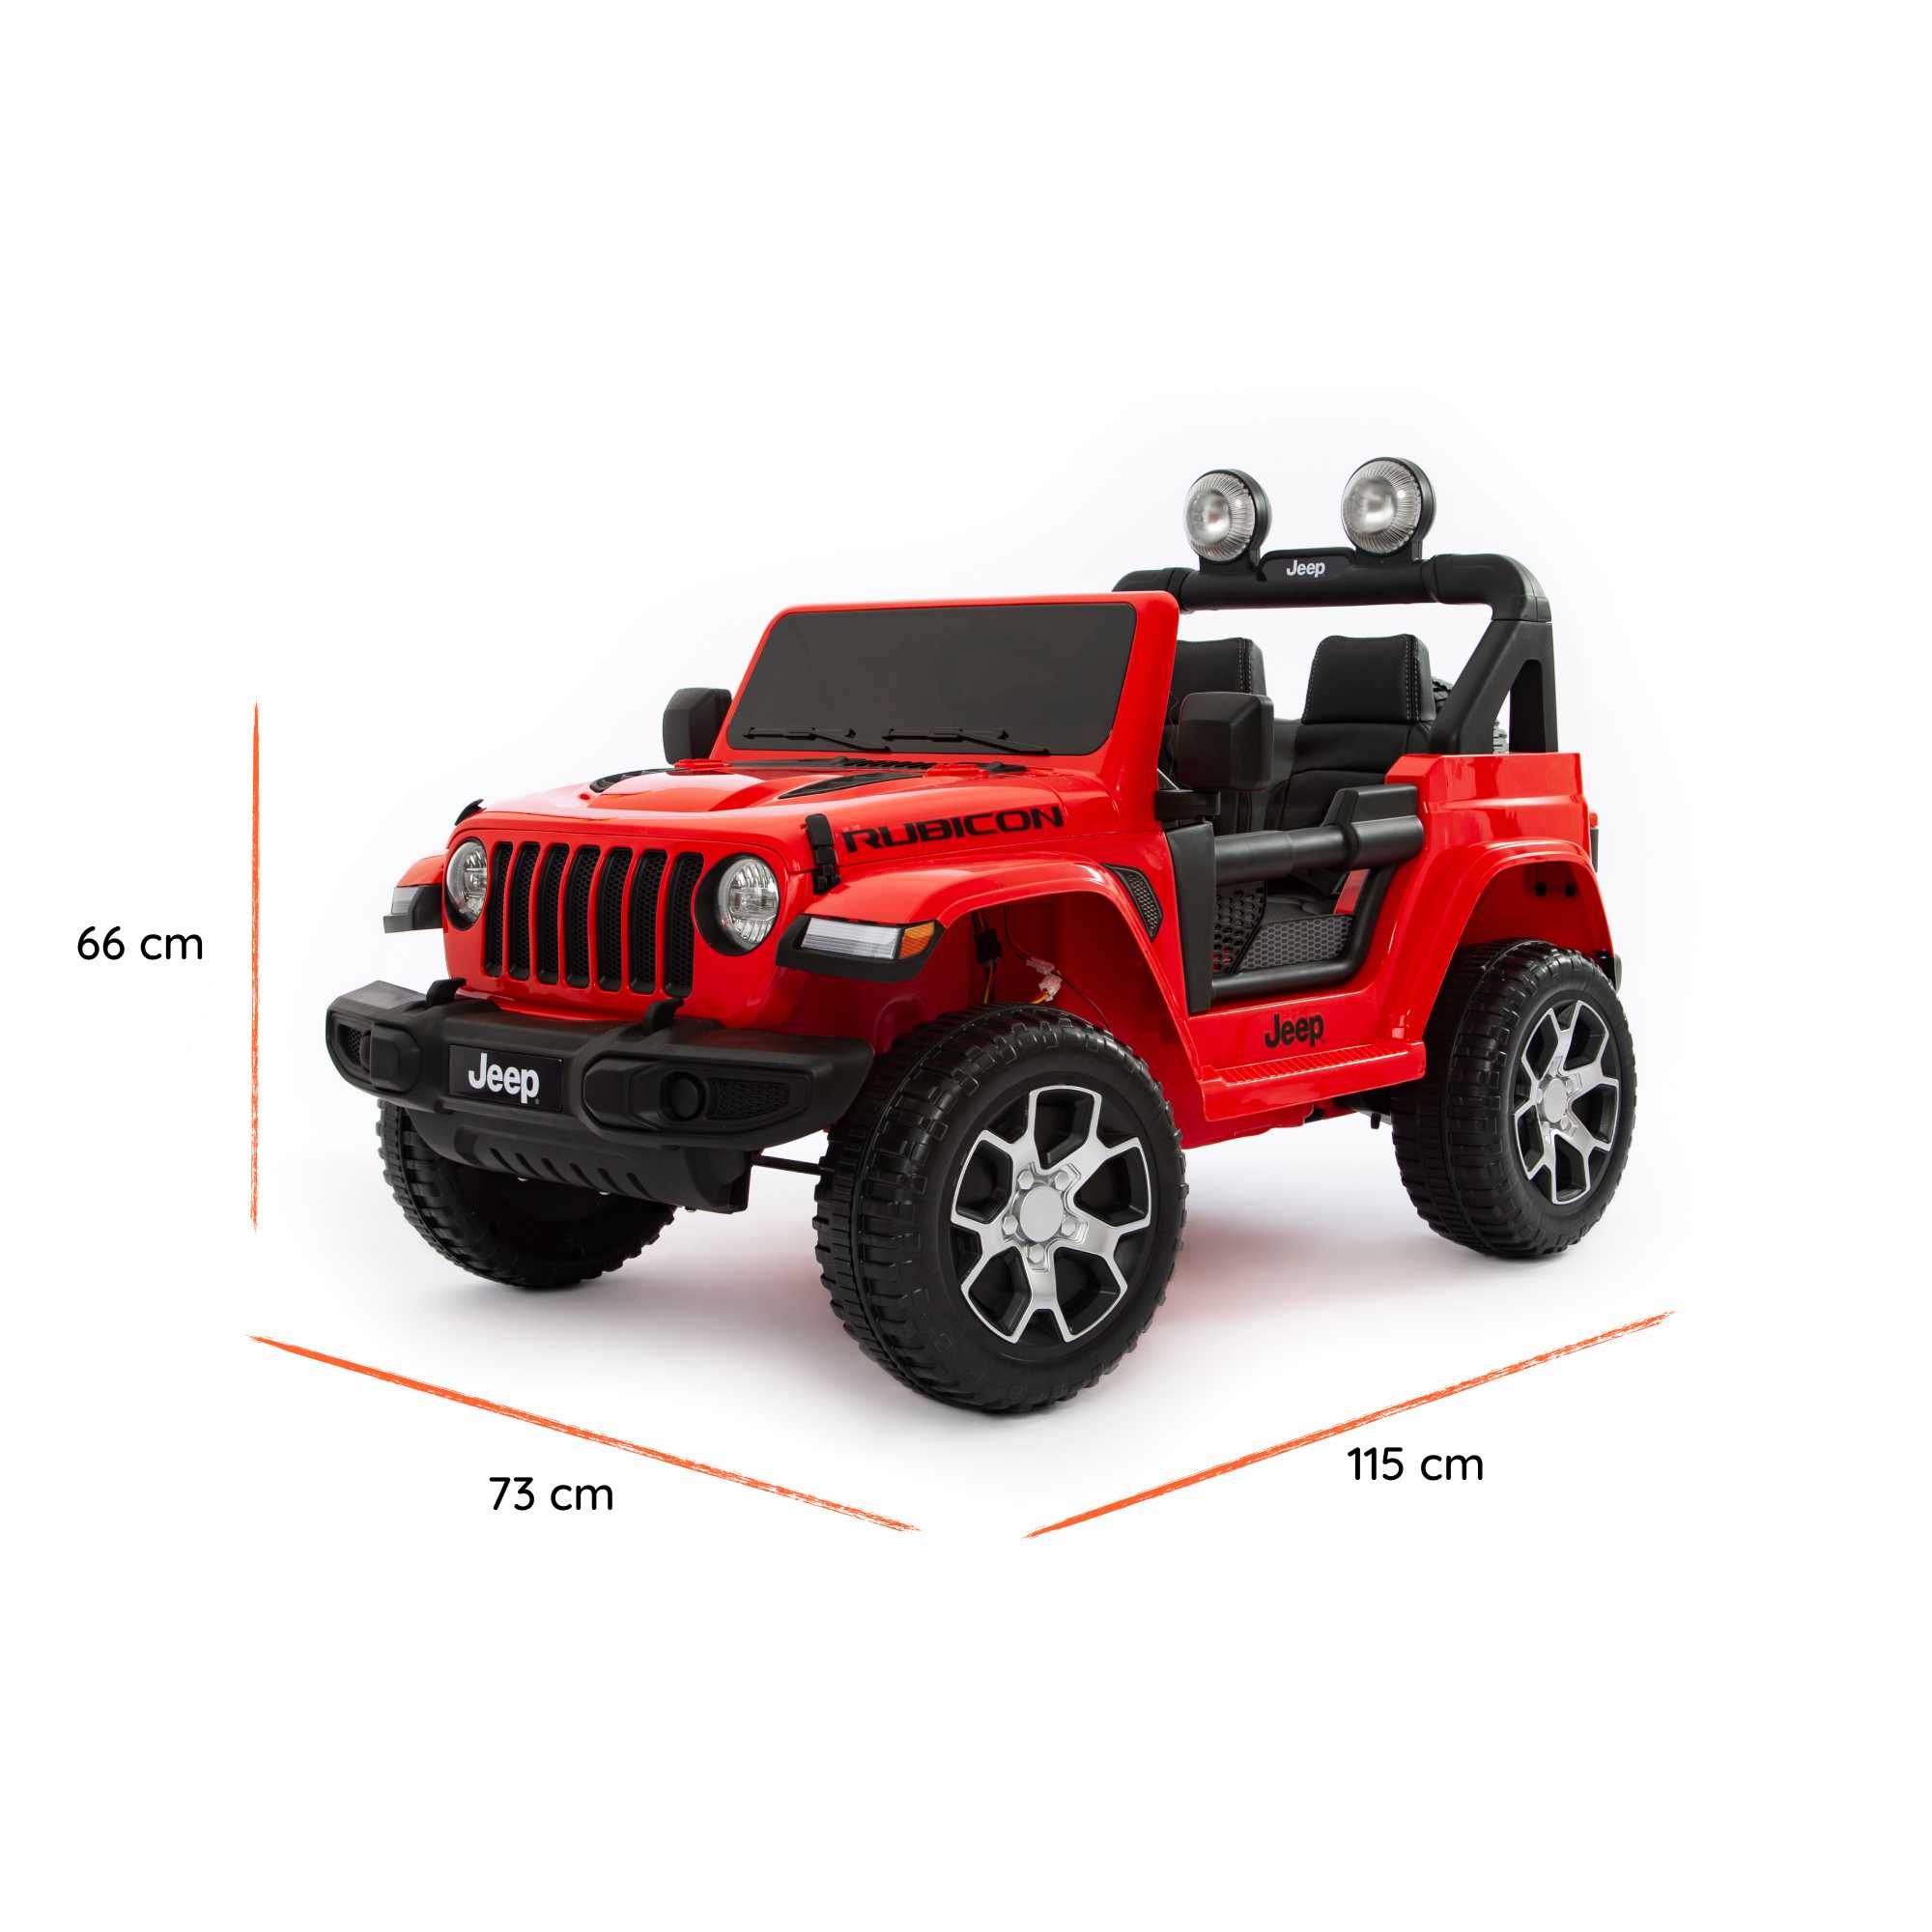 Jeep Wrangler Rubicon rossa dimensioni